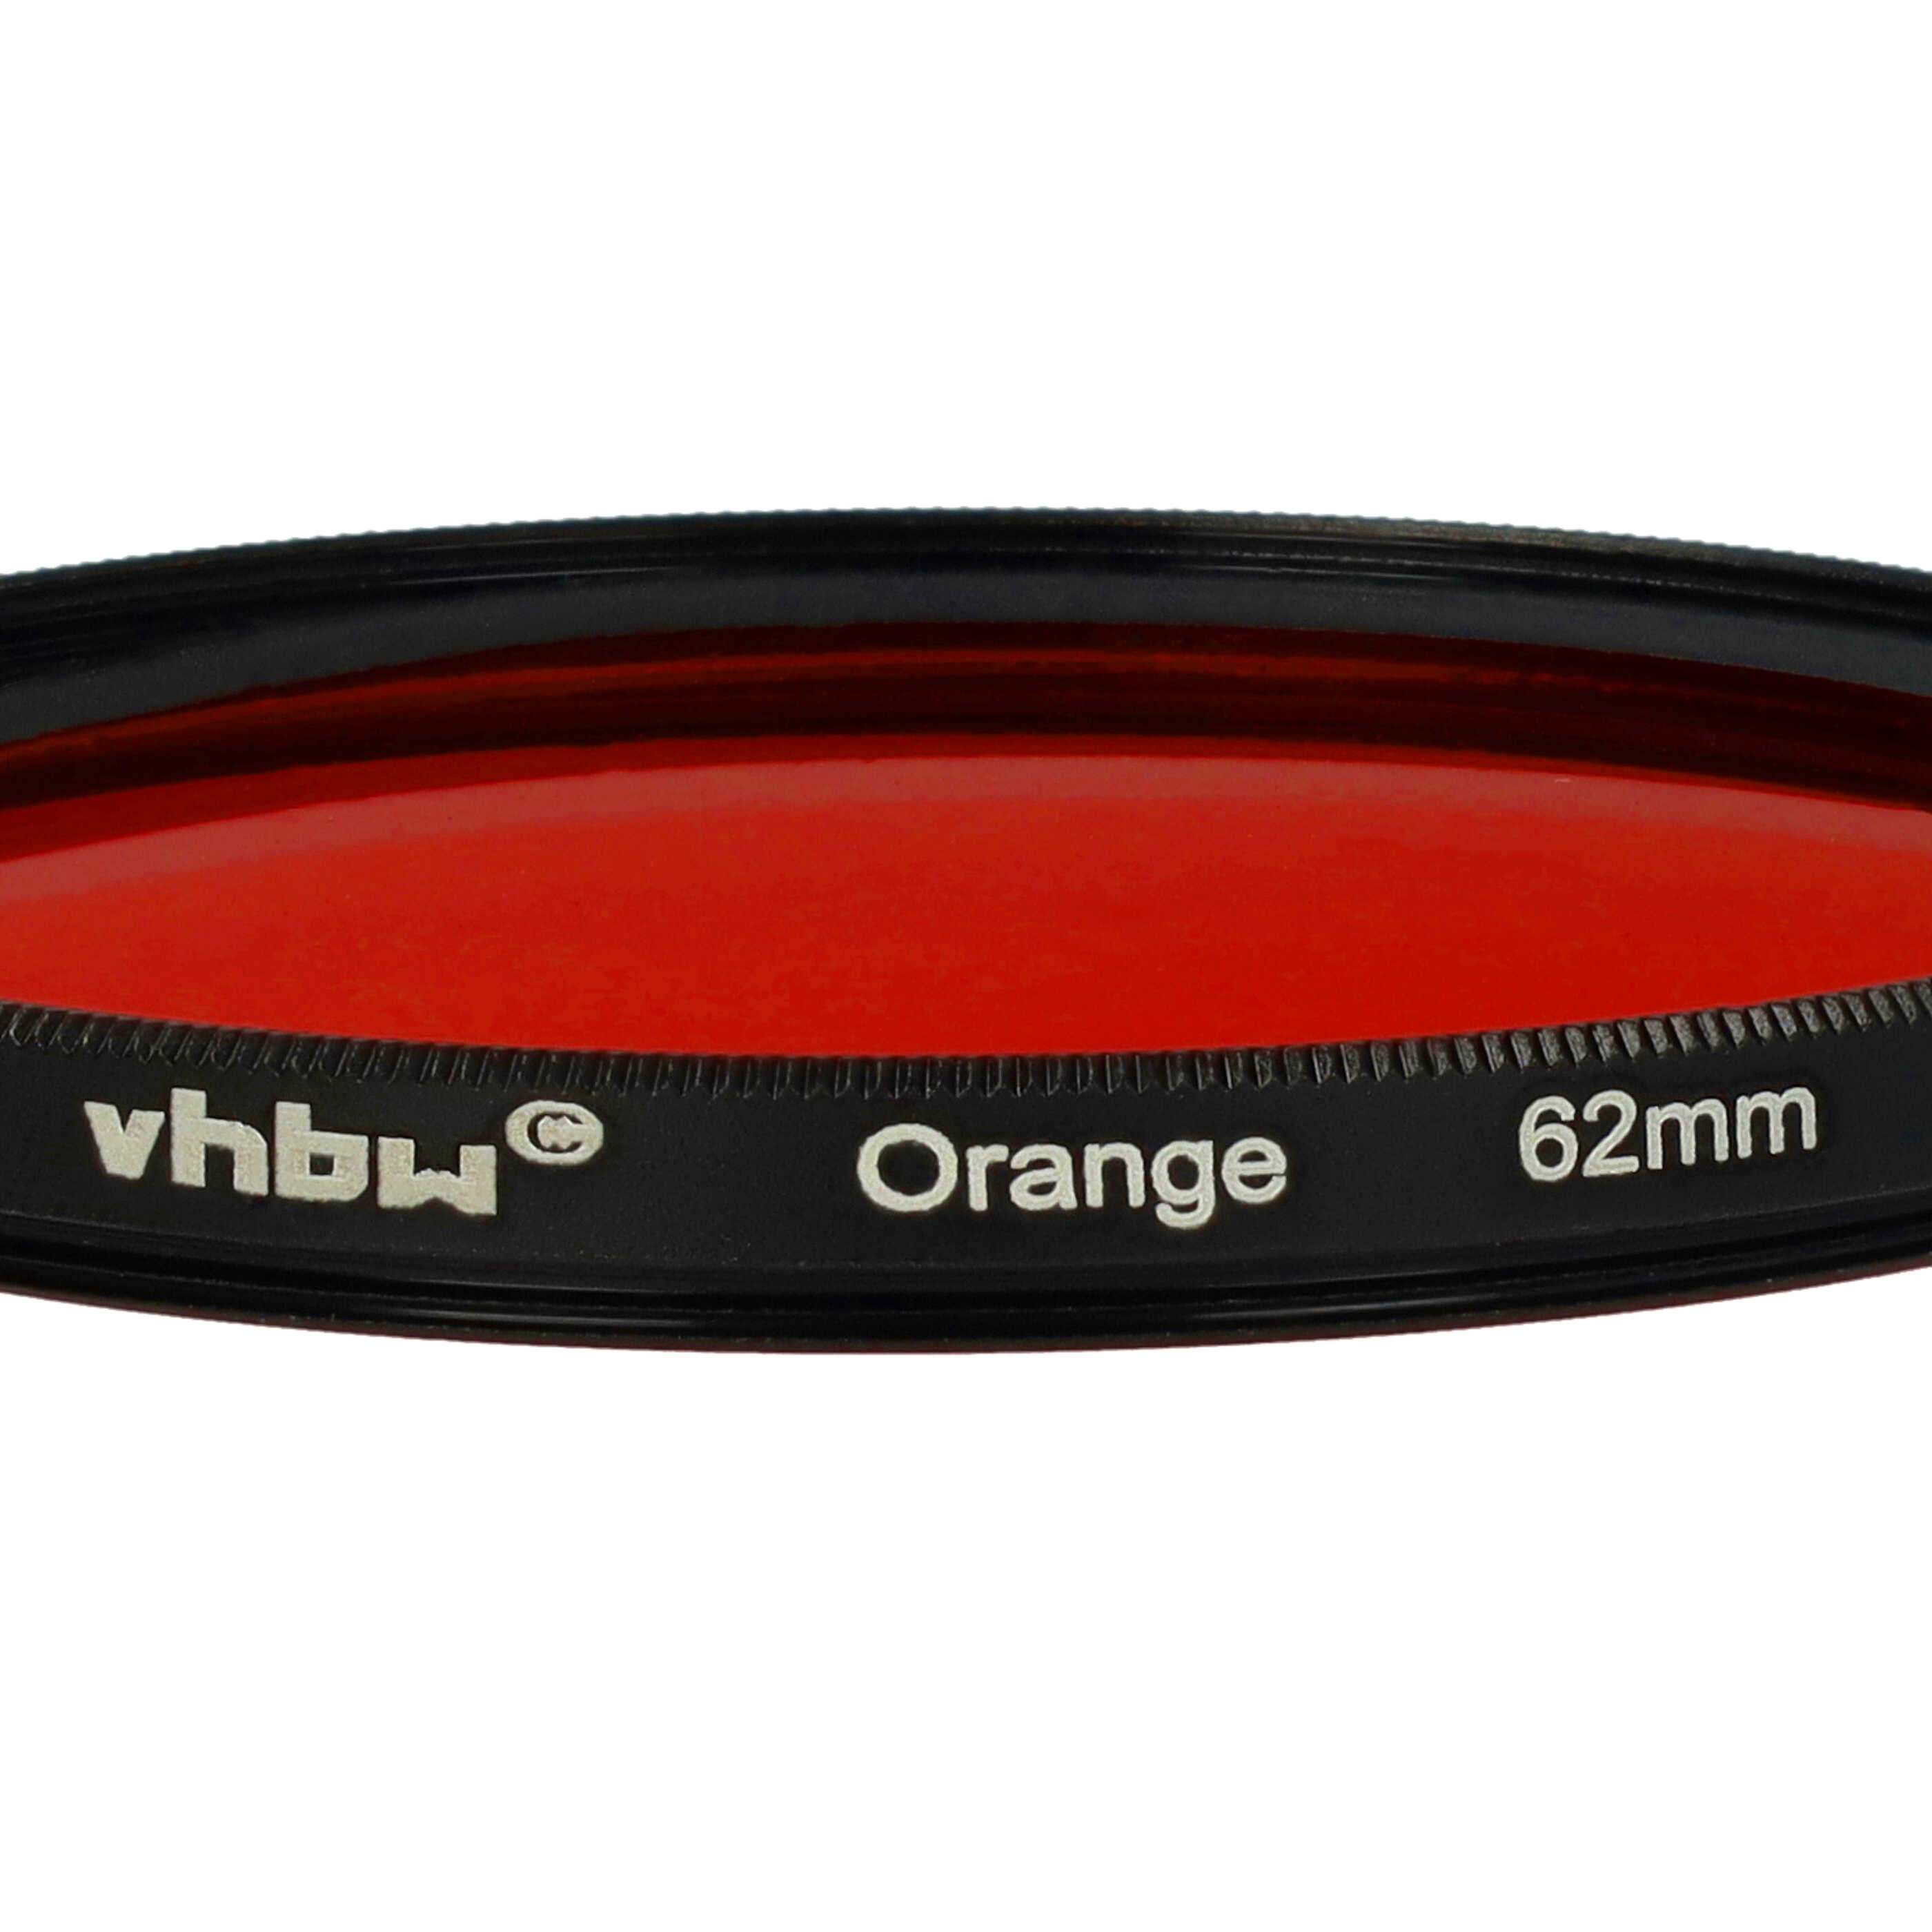 Farbfilter orange passend für Kamera Objektive mit 62 mm Filtergewinde - Orangefilter